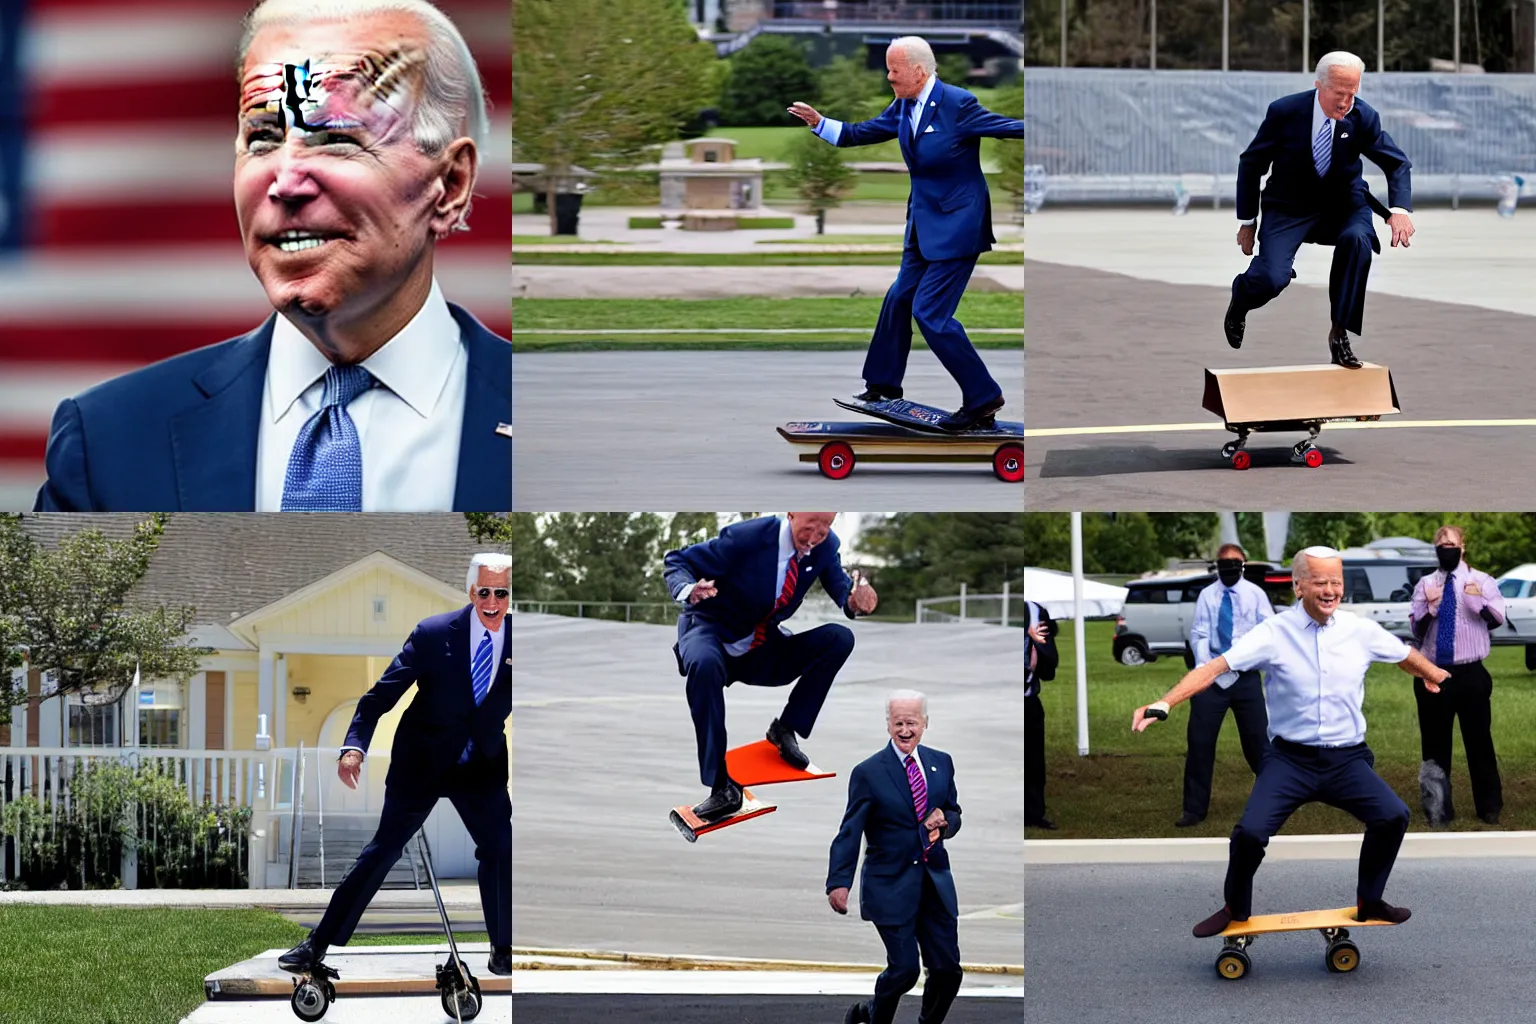 Prompt: Joe Biden doing a kickflip